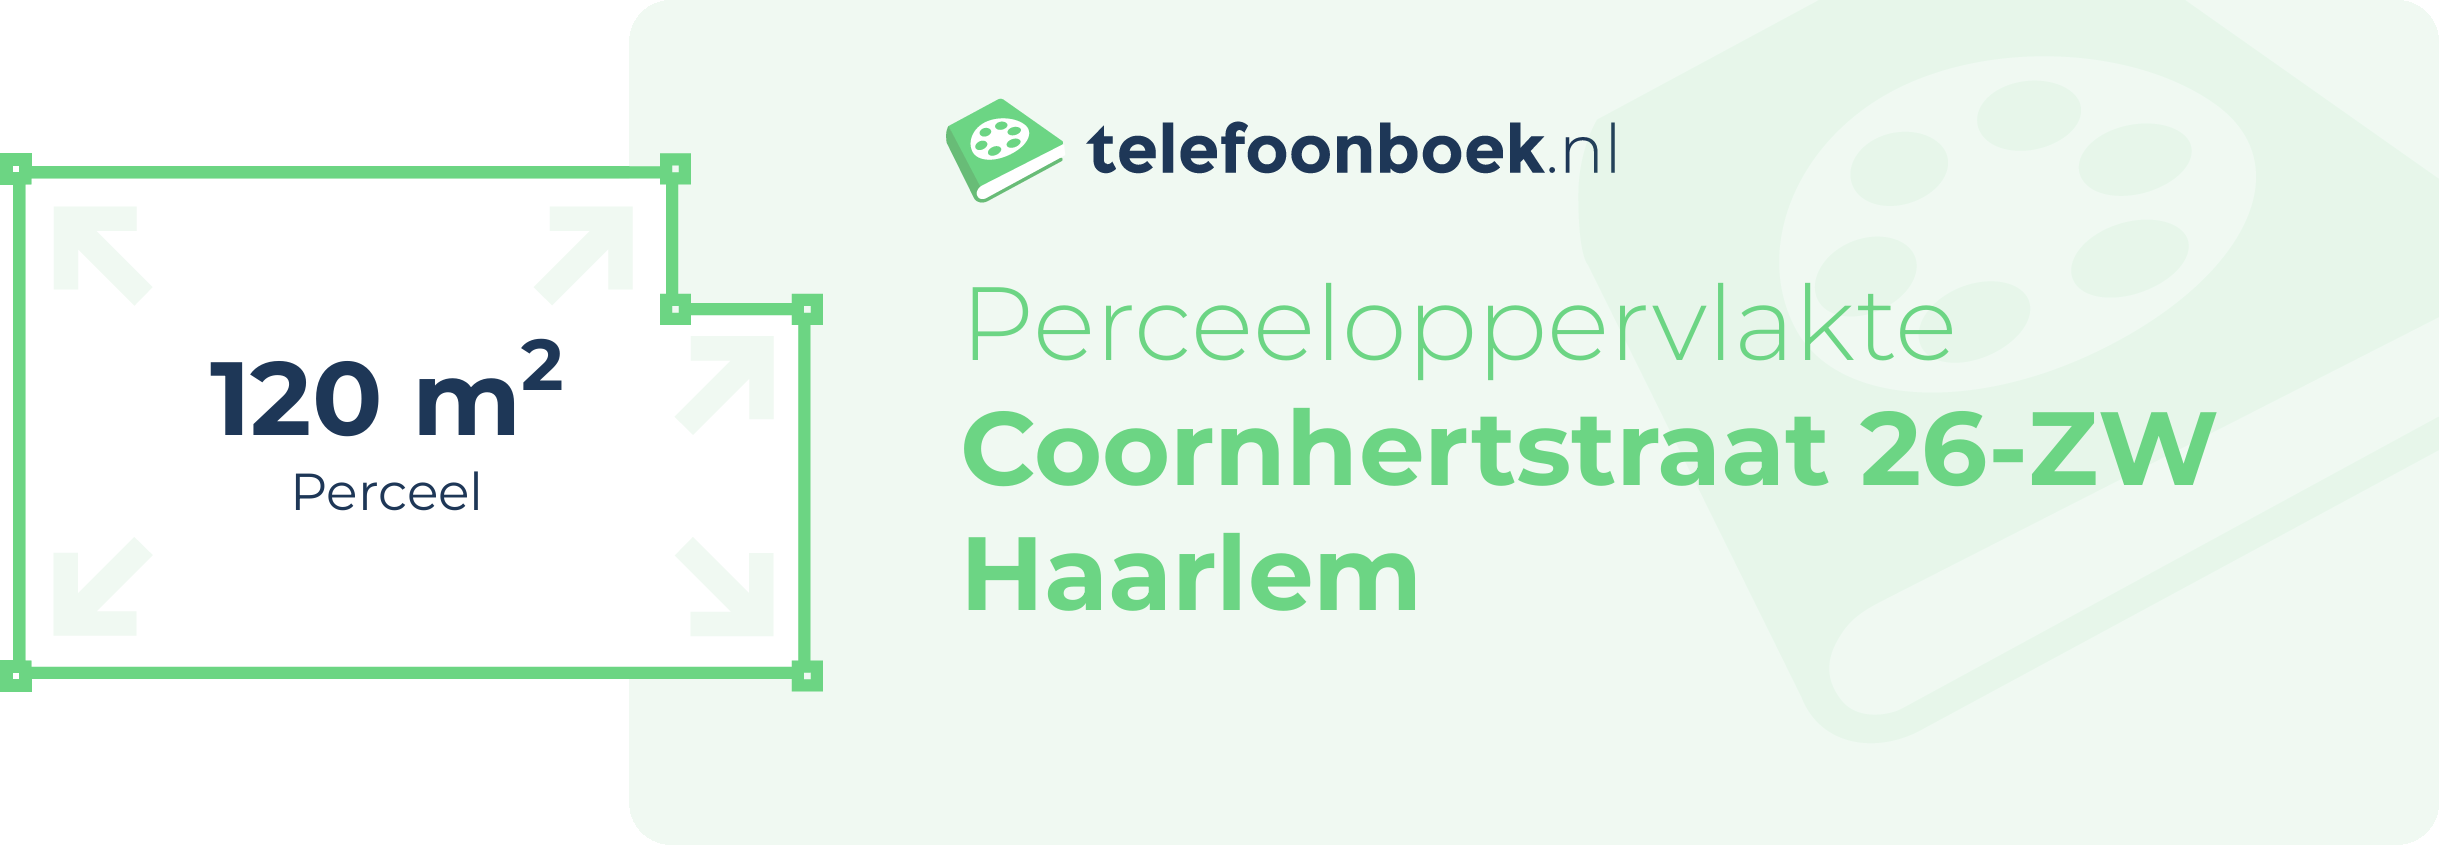 Perceeloppervlakte Coornhertstraat 26-ZW Haarlem